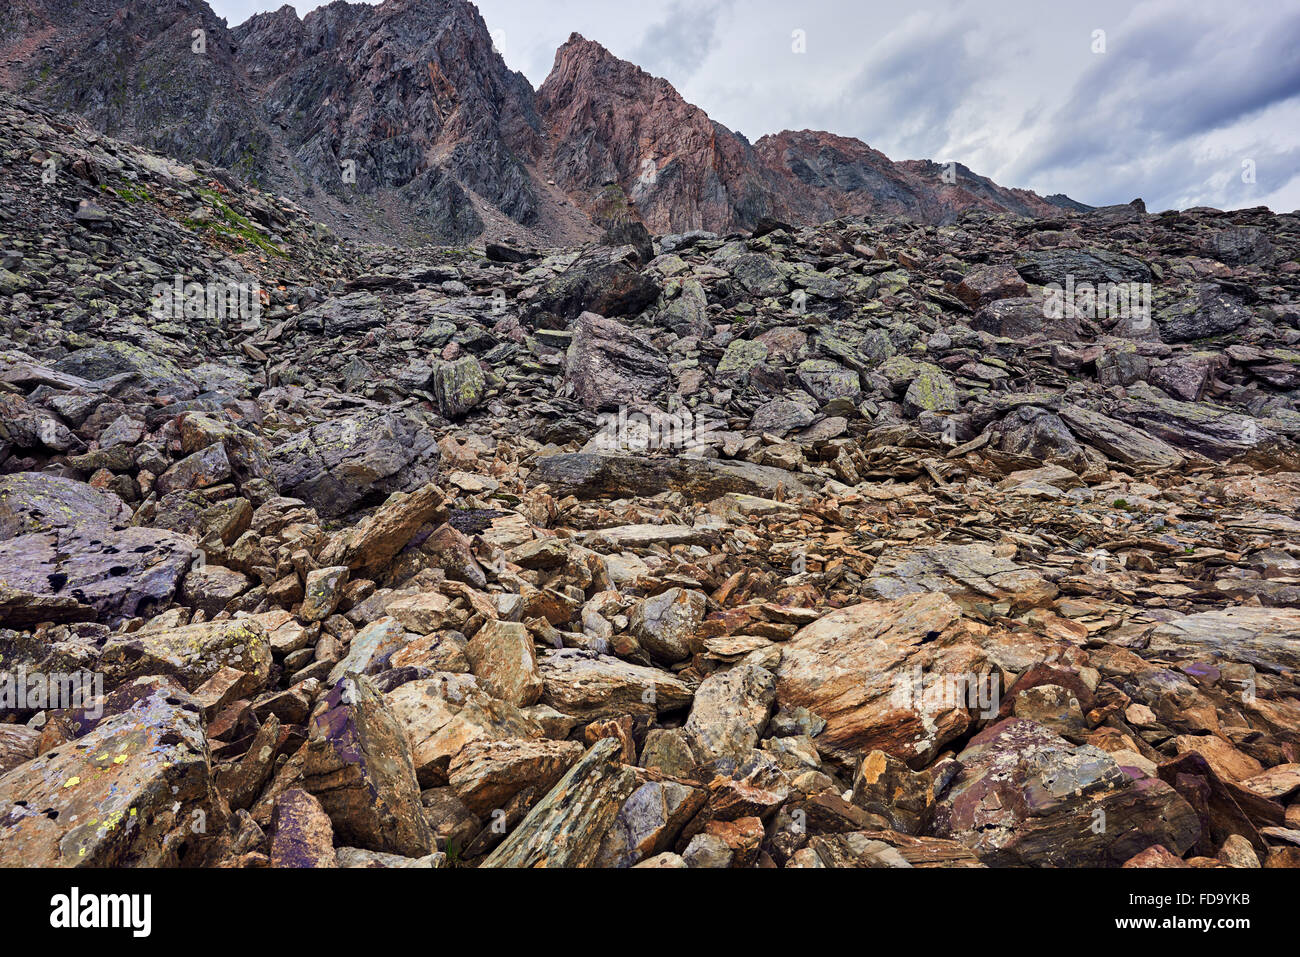 Braunen Stücke von geschichteten Felsen Riegel Moräne Bolzen in den Bergen. Sajan-Gebirge. Russland Stockfoto